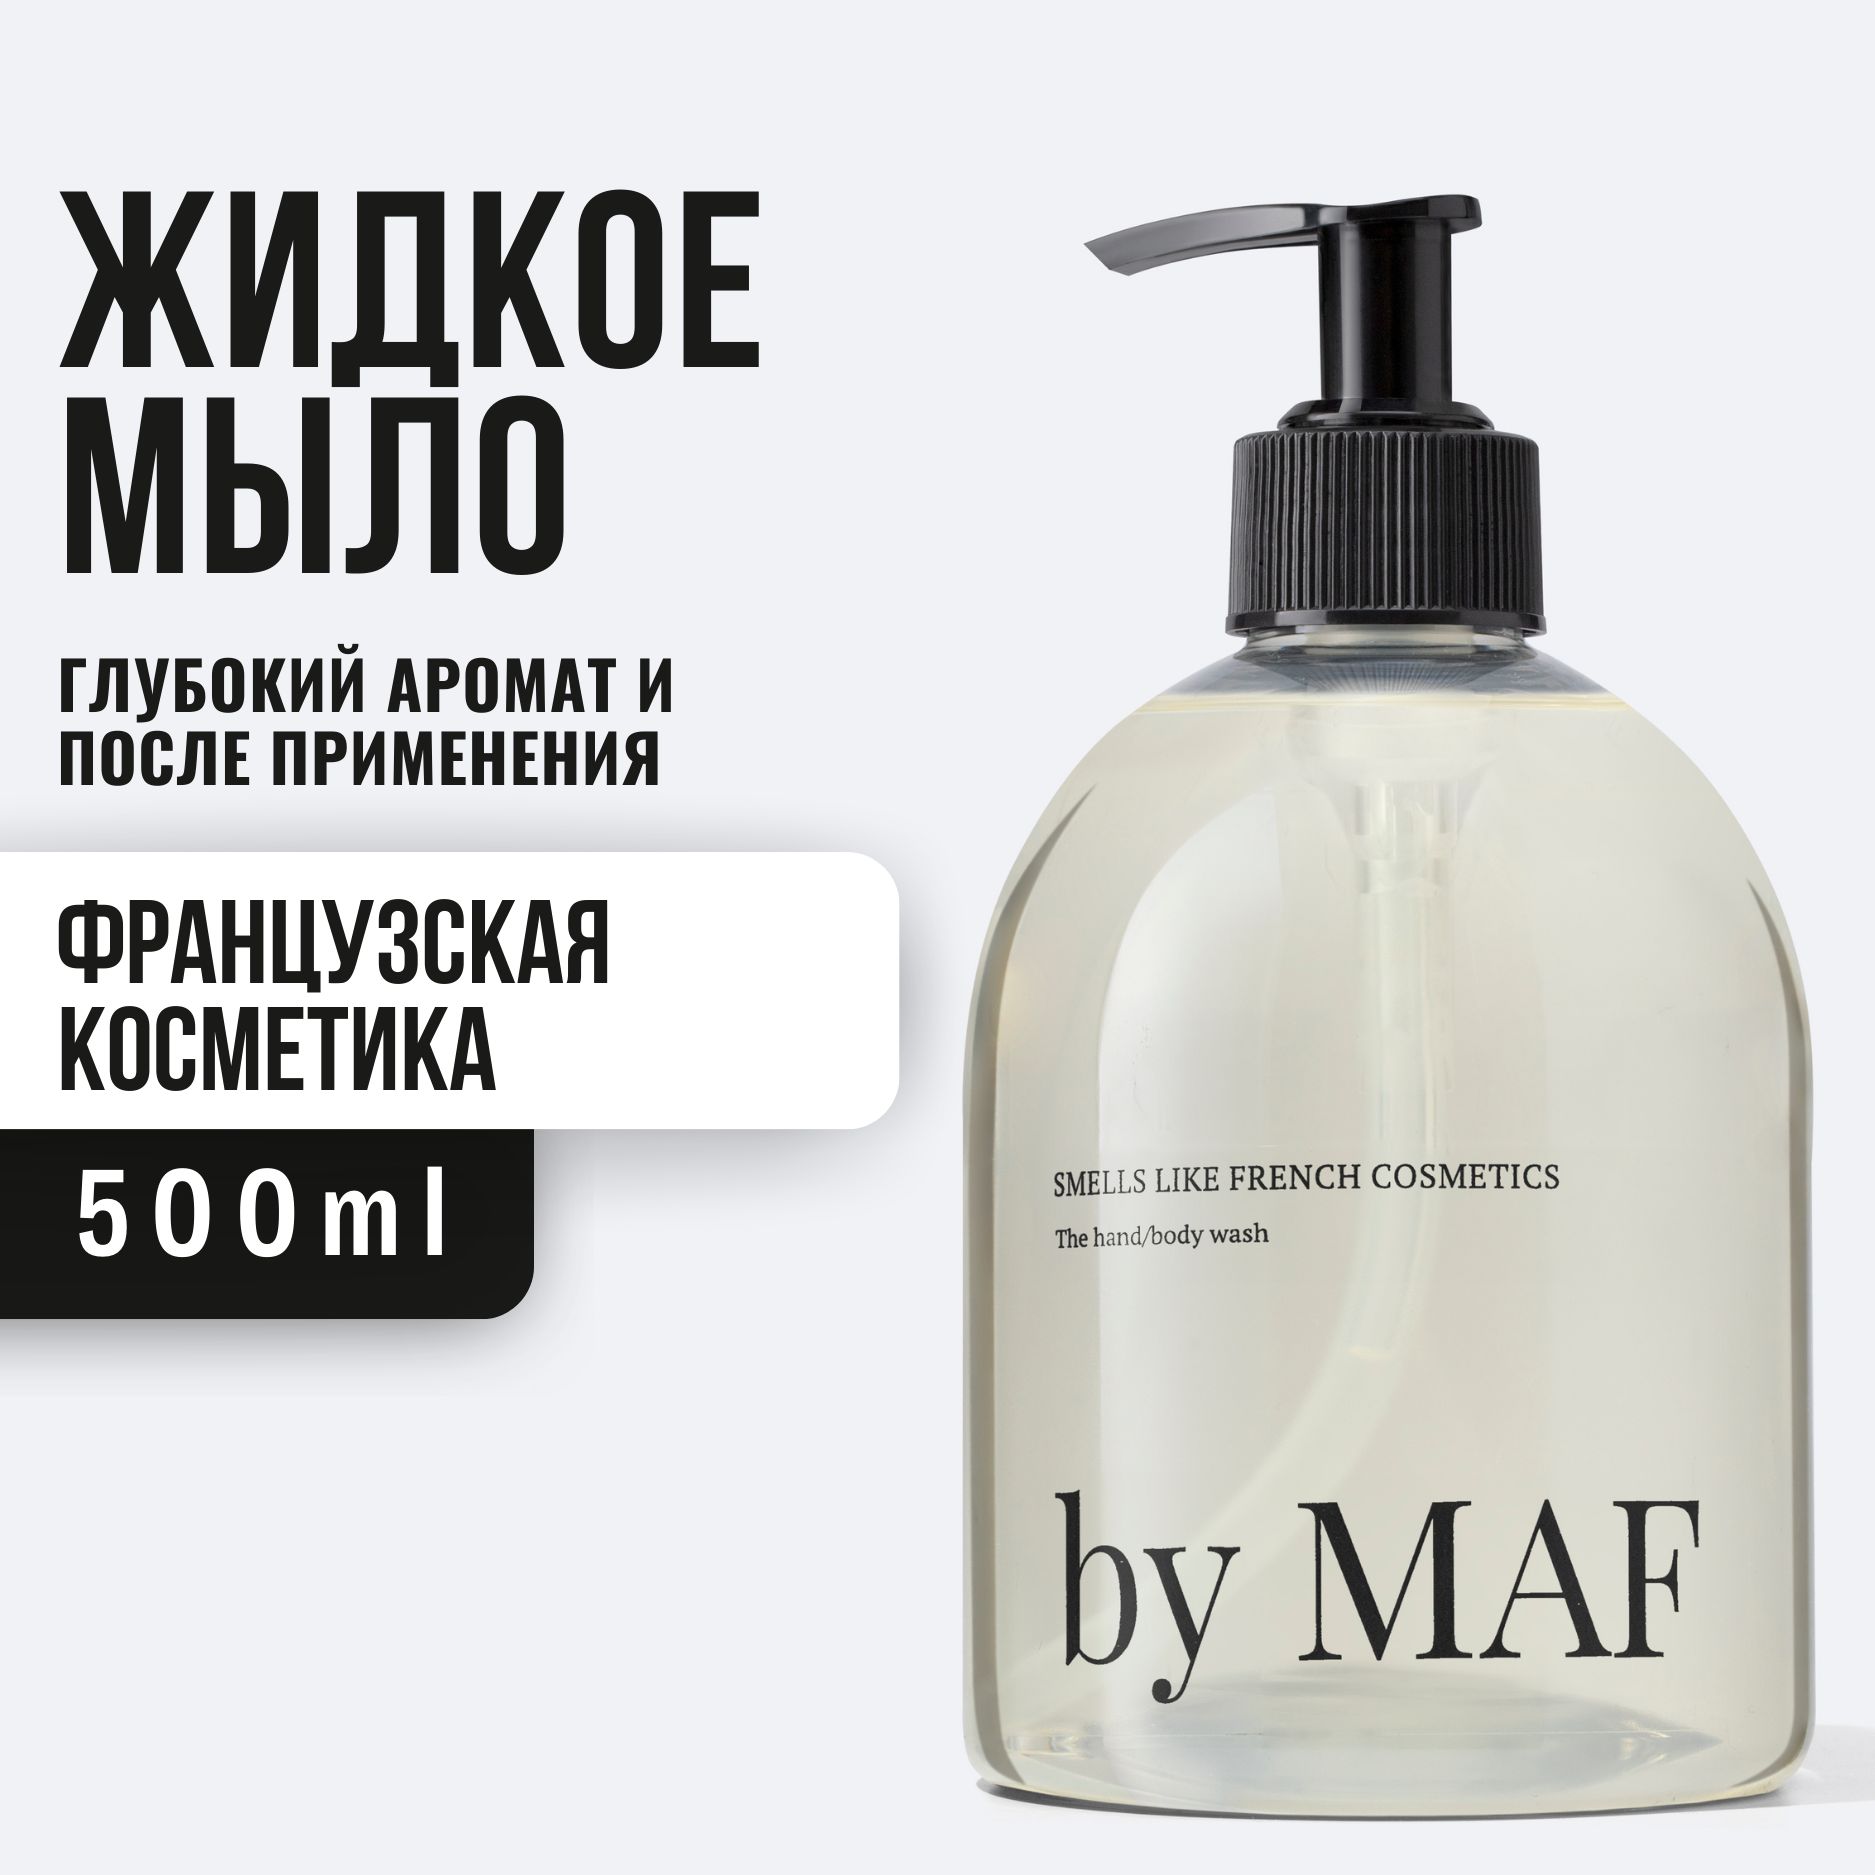 By maf. By MAF гель для душа. By MAF smells like French Cosmetics купить.